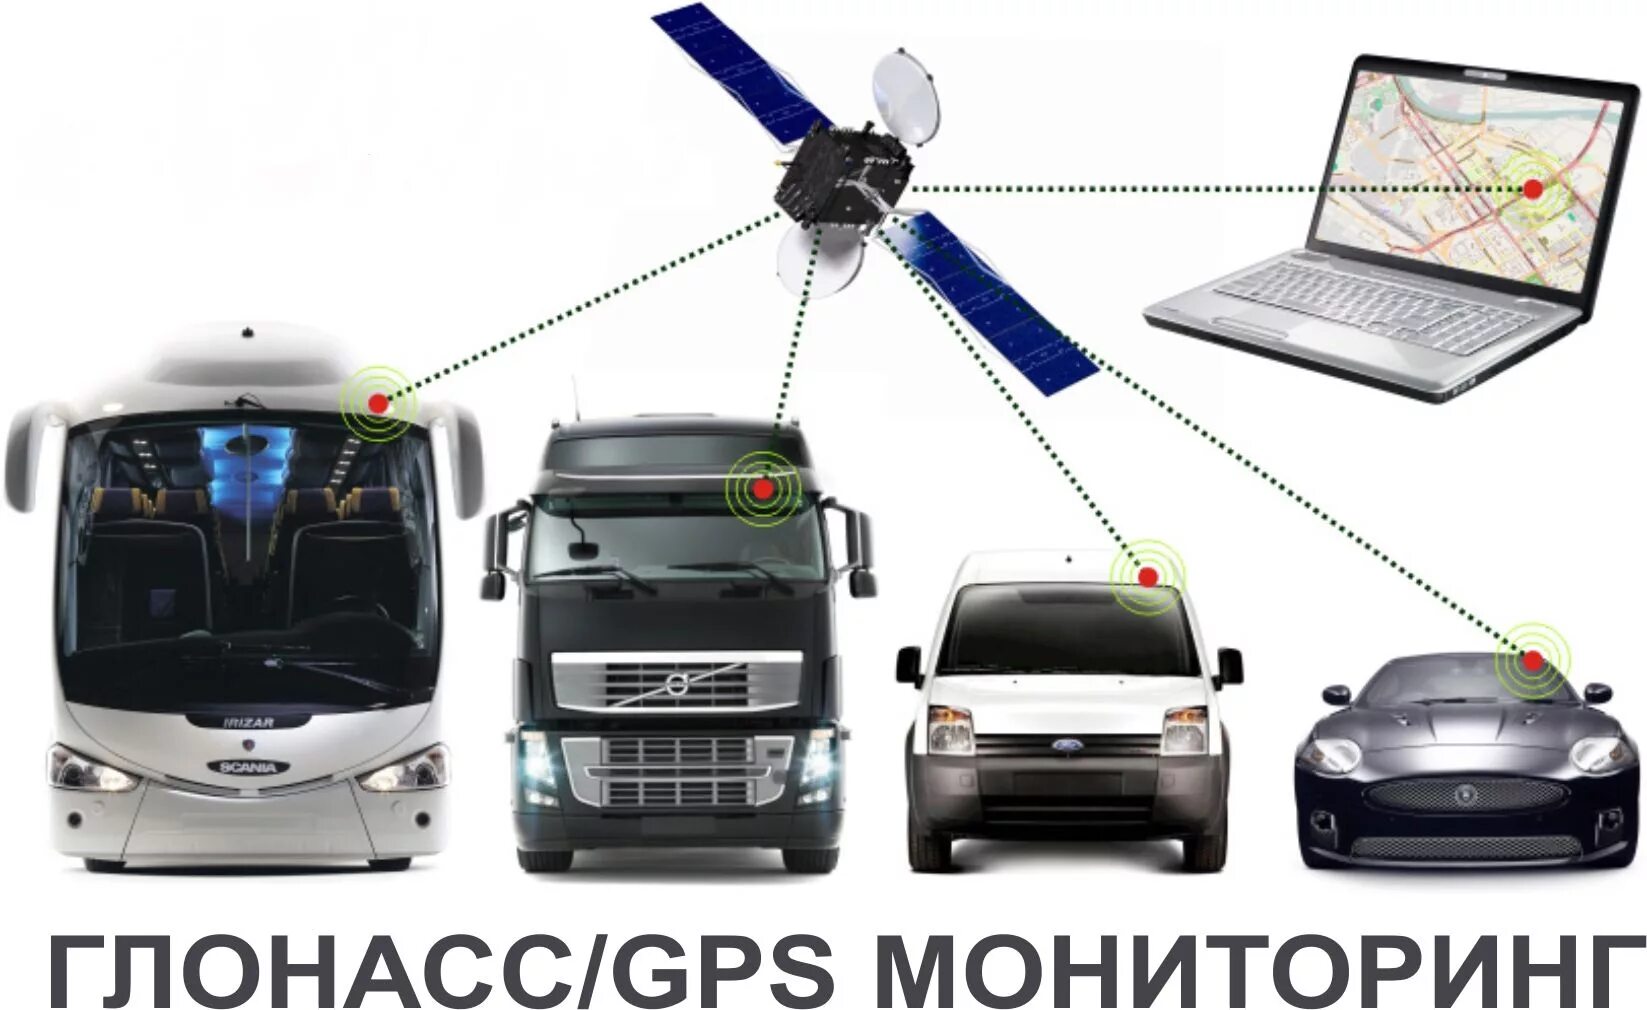 Спутниковая система ГЛОНАСС/GPS. Система ГЛОНАСС/GPS мониторинга. Система мониторинга транспорта GPS ГЛОНАСС. Системы спутникового мониторинга ГЛОНАСС.